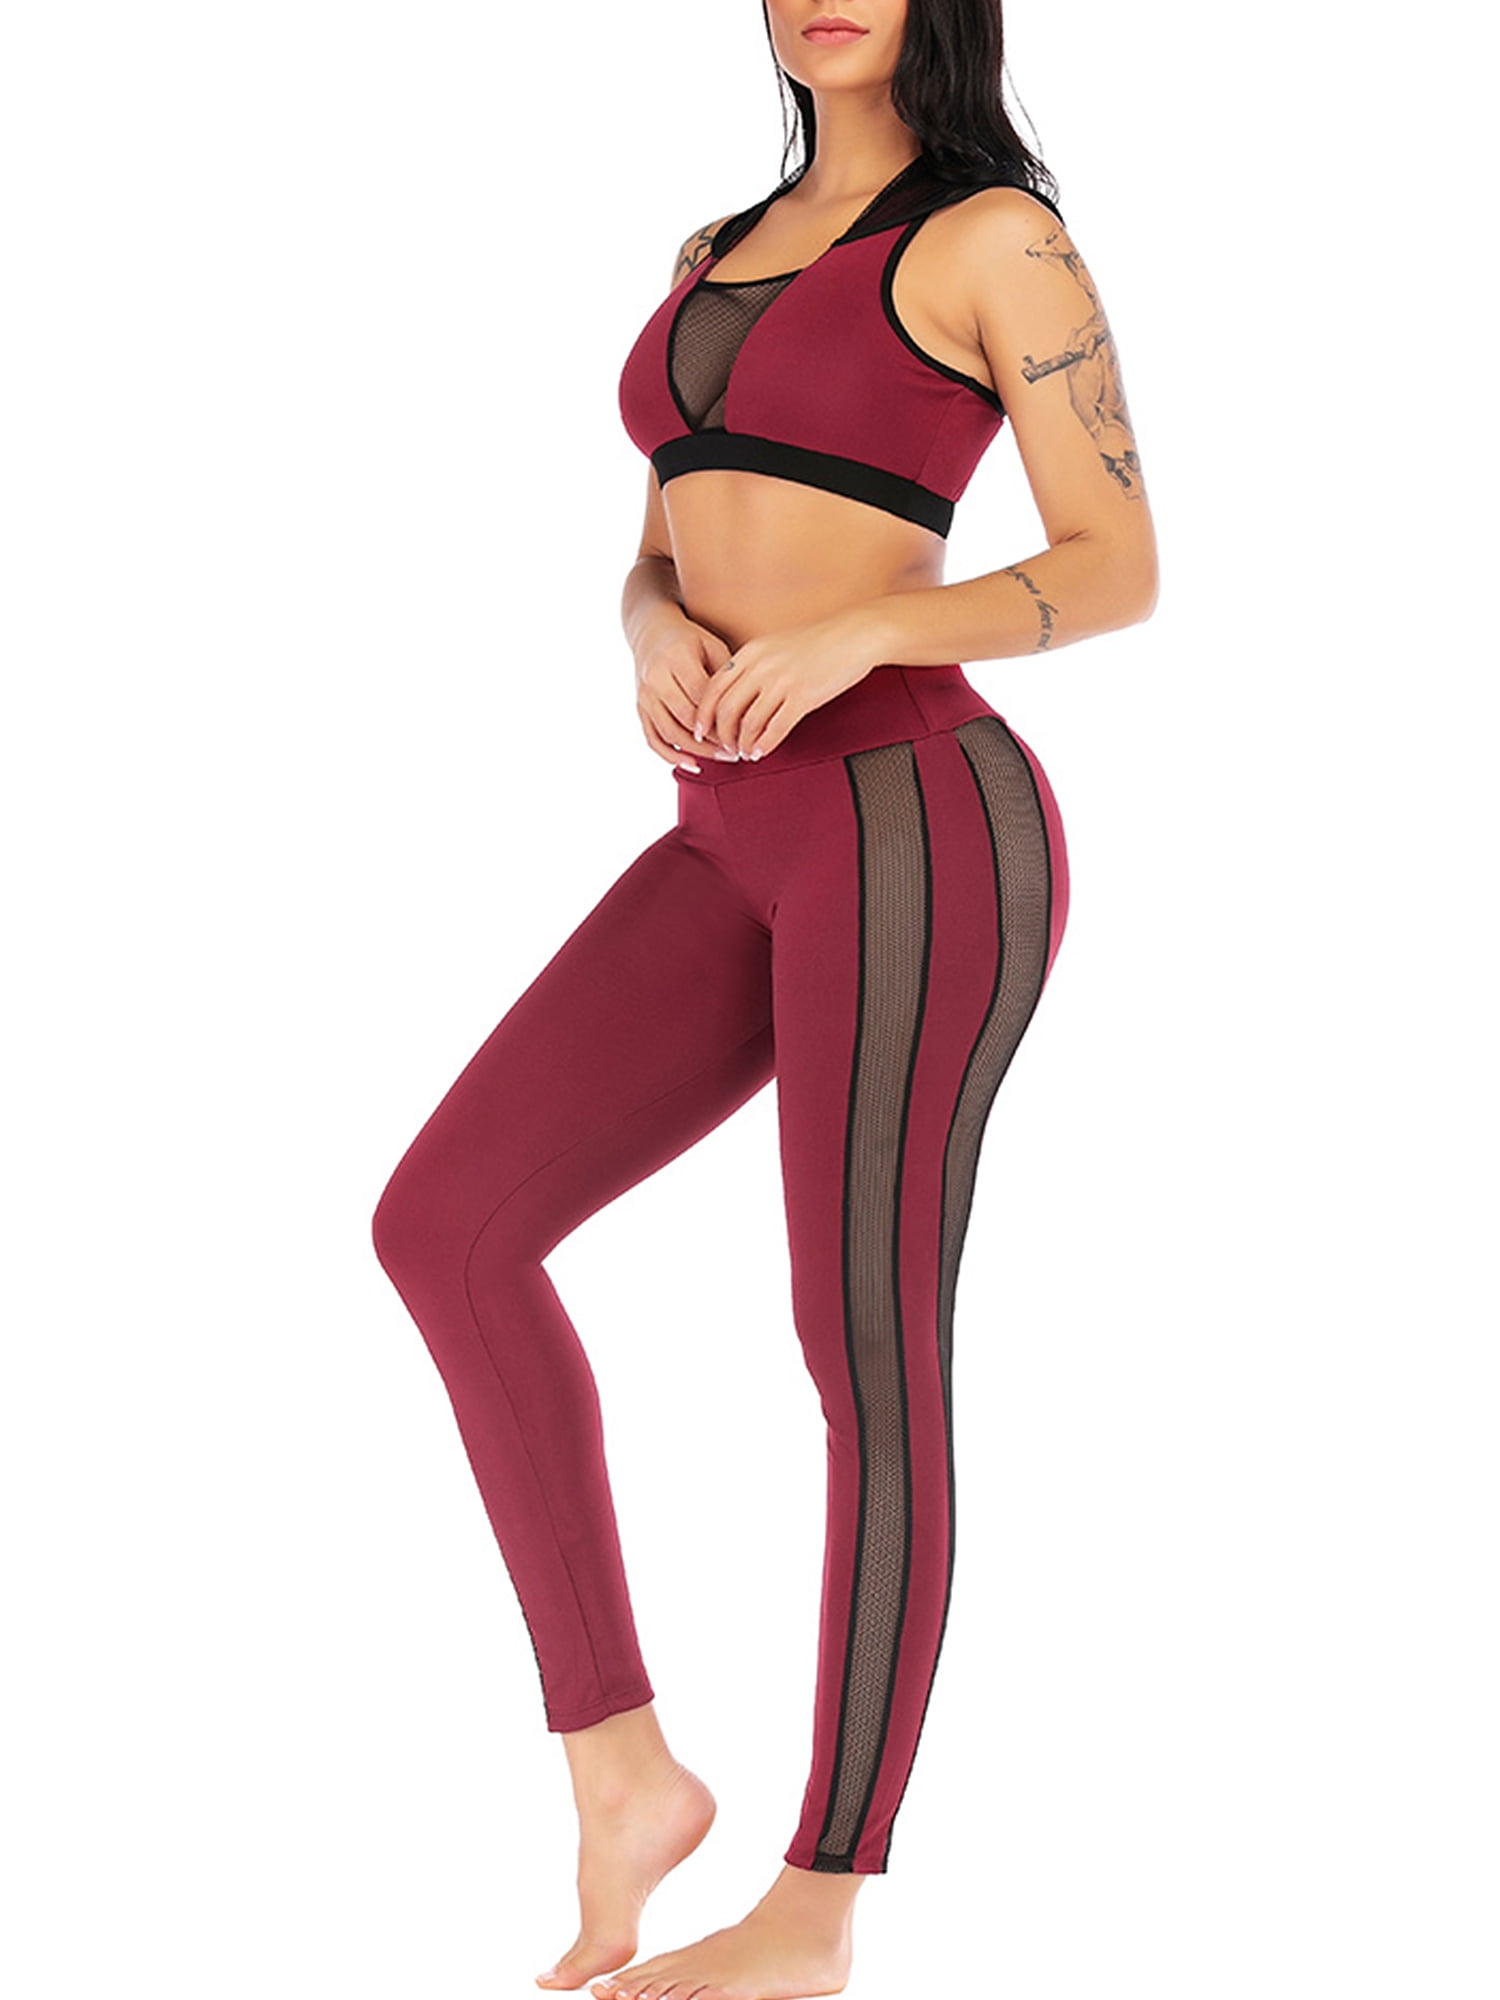 FAFAIR Damen 2-in-1 Tank Top und Sport BH Sommer Workout Tops für Yoga Fitness Gym mit Push Up BH